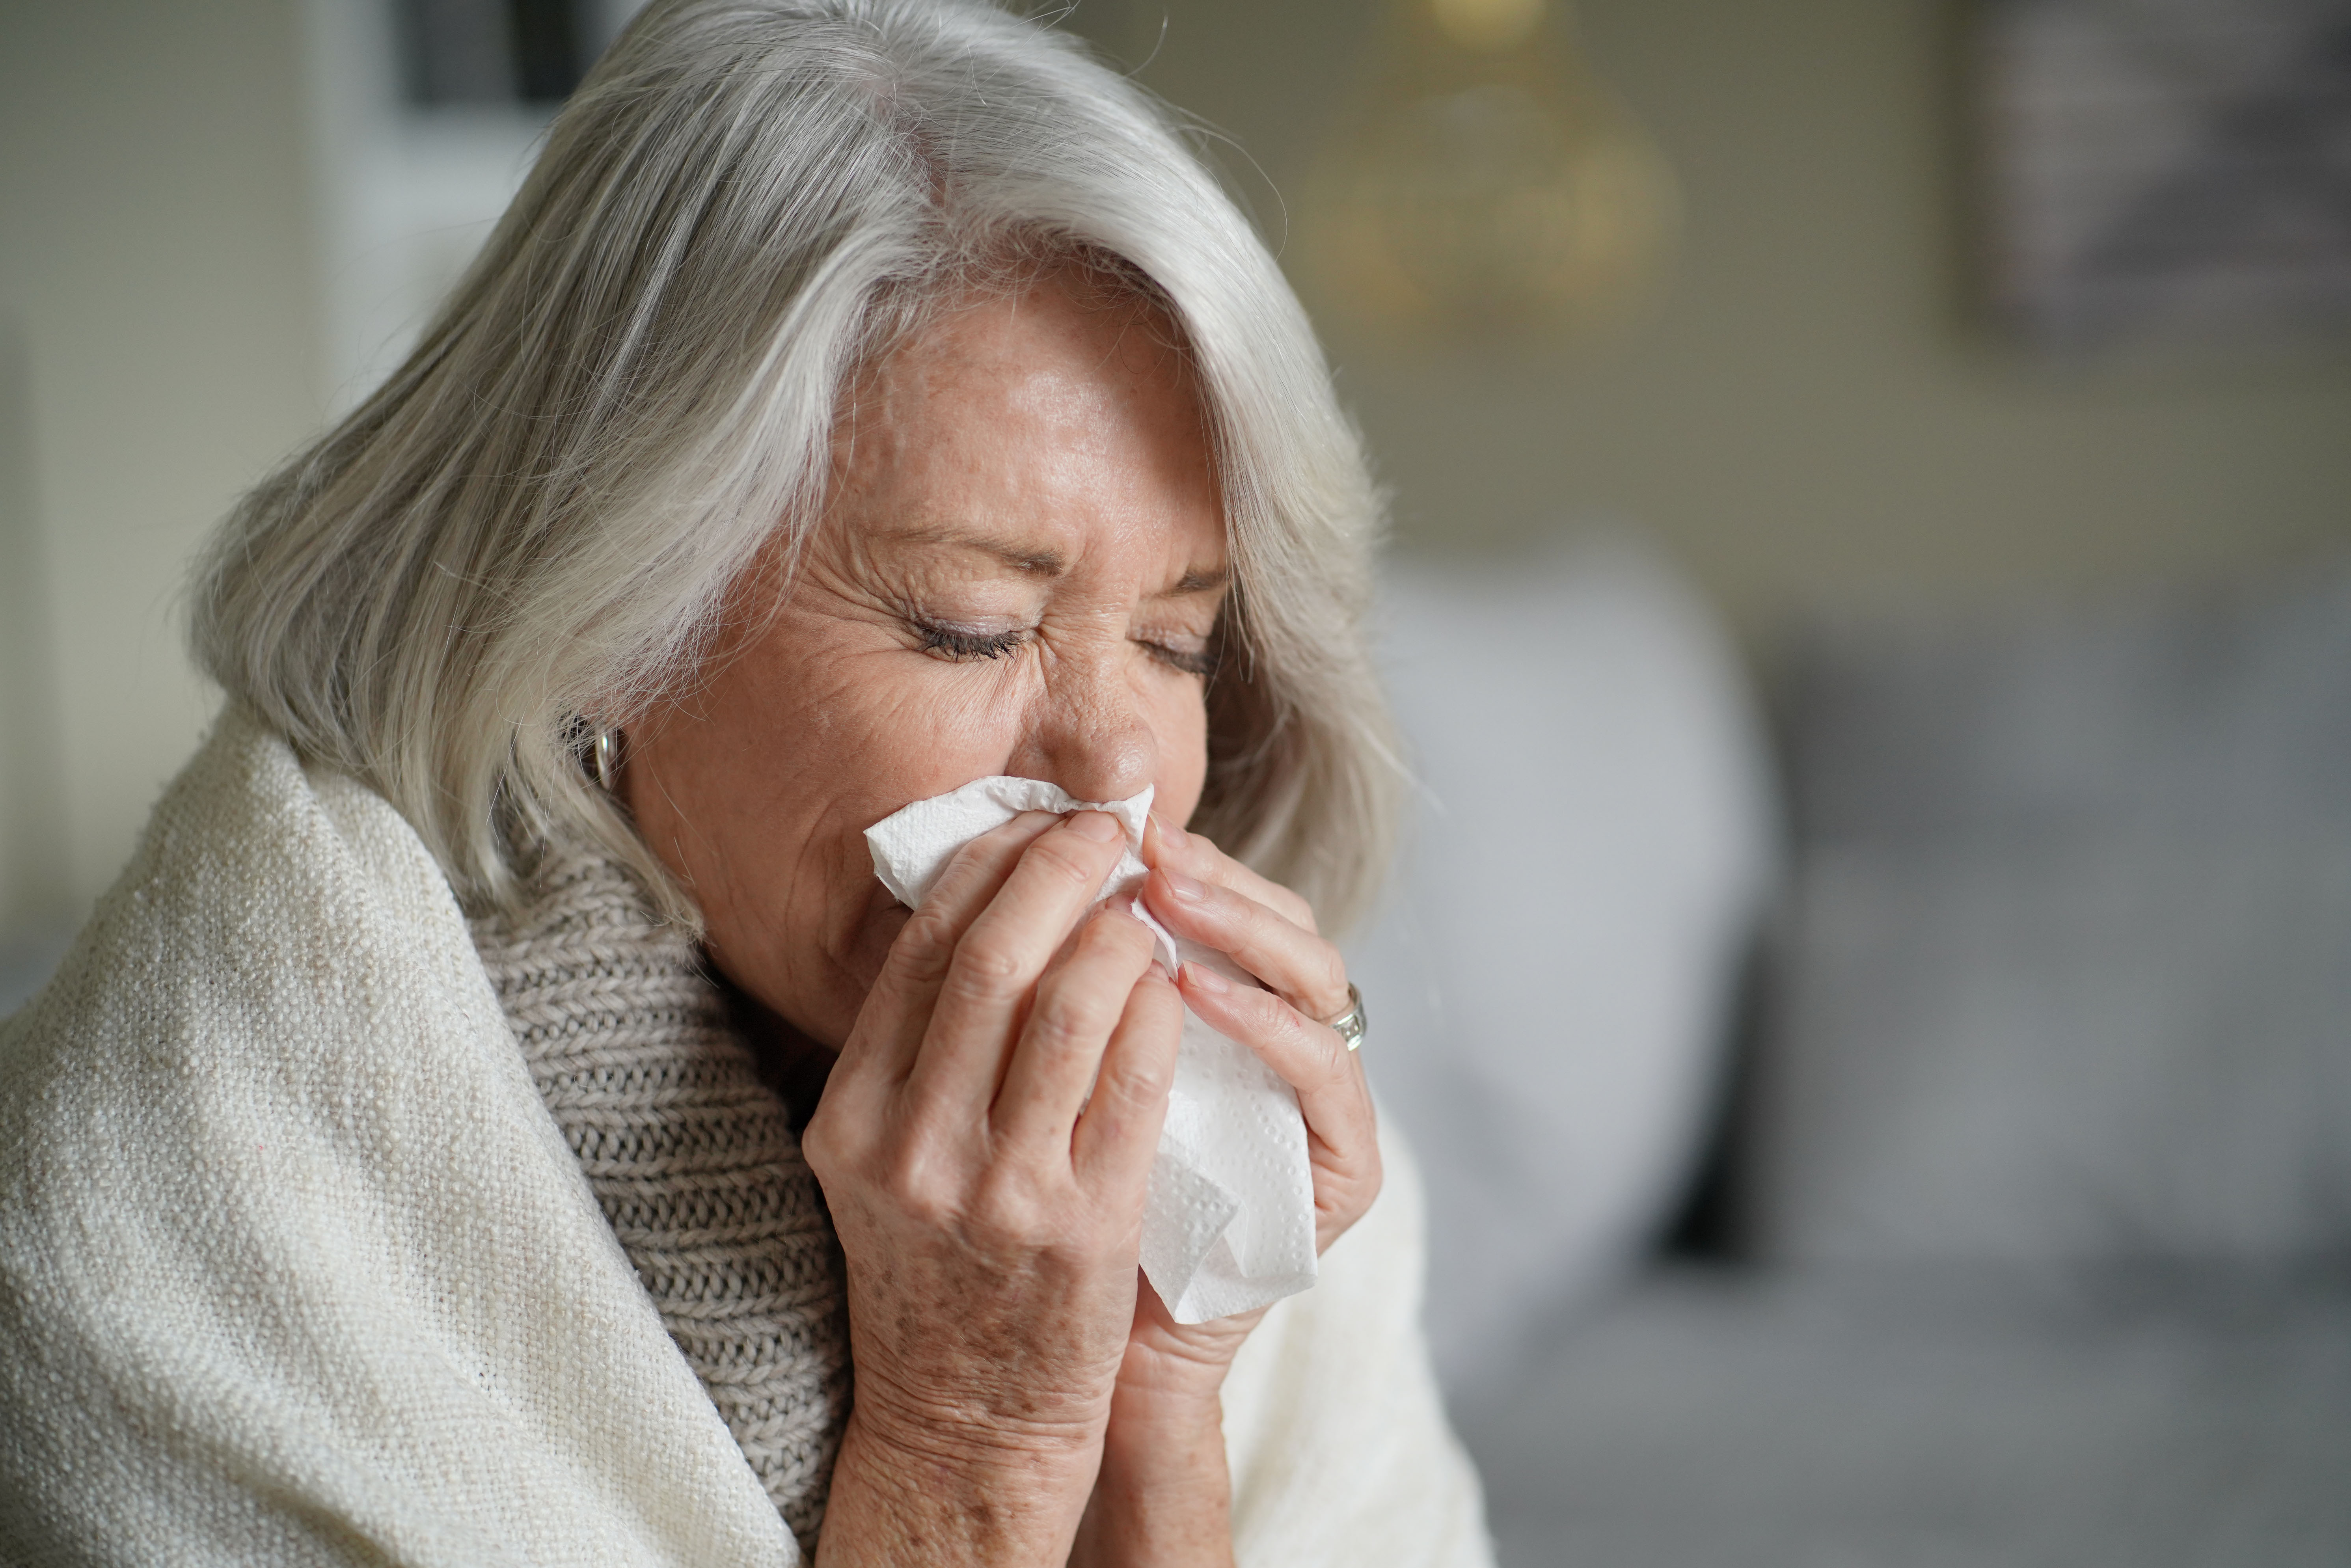 Il “lungo raffreddore”: ecco i sintomi che possono durare fino a 4 settimane dopo l’infezione